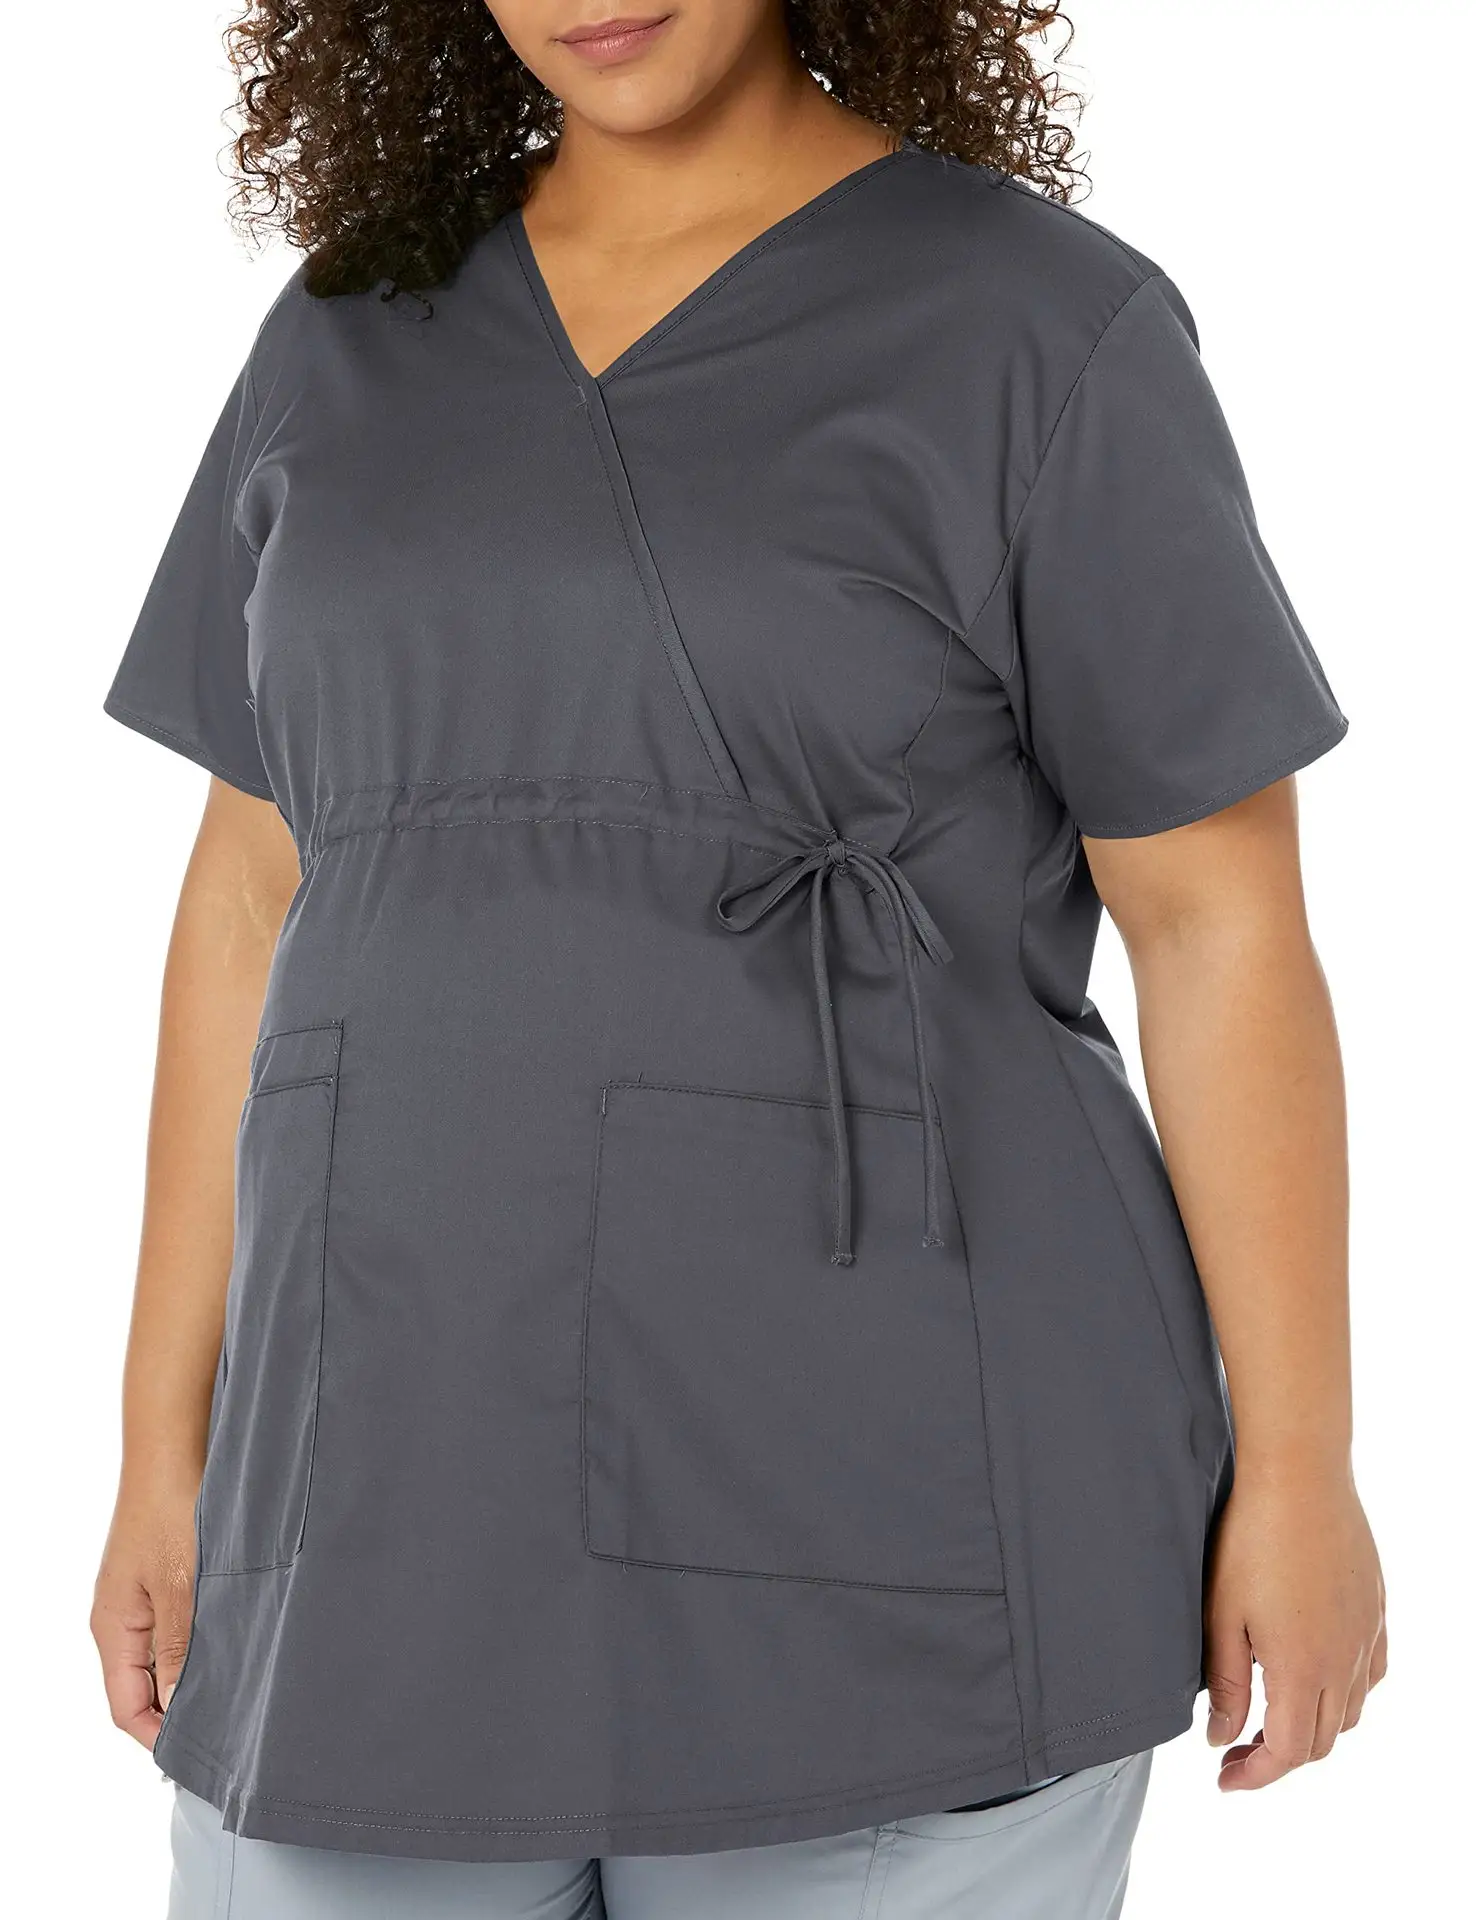 OEM atasan ibu hamil wanita Scrub ukuran besar seragam perawat perawat medis atasan seragam Suster dengan tali pinggang yang dapat disesuaikan